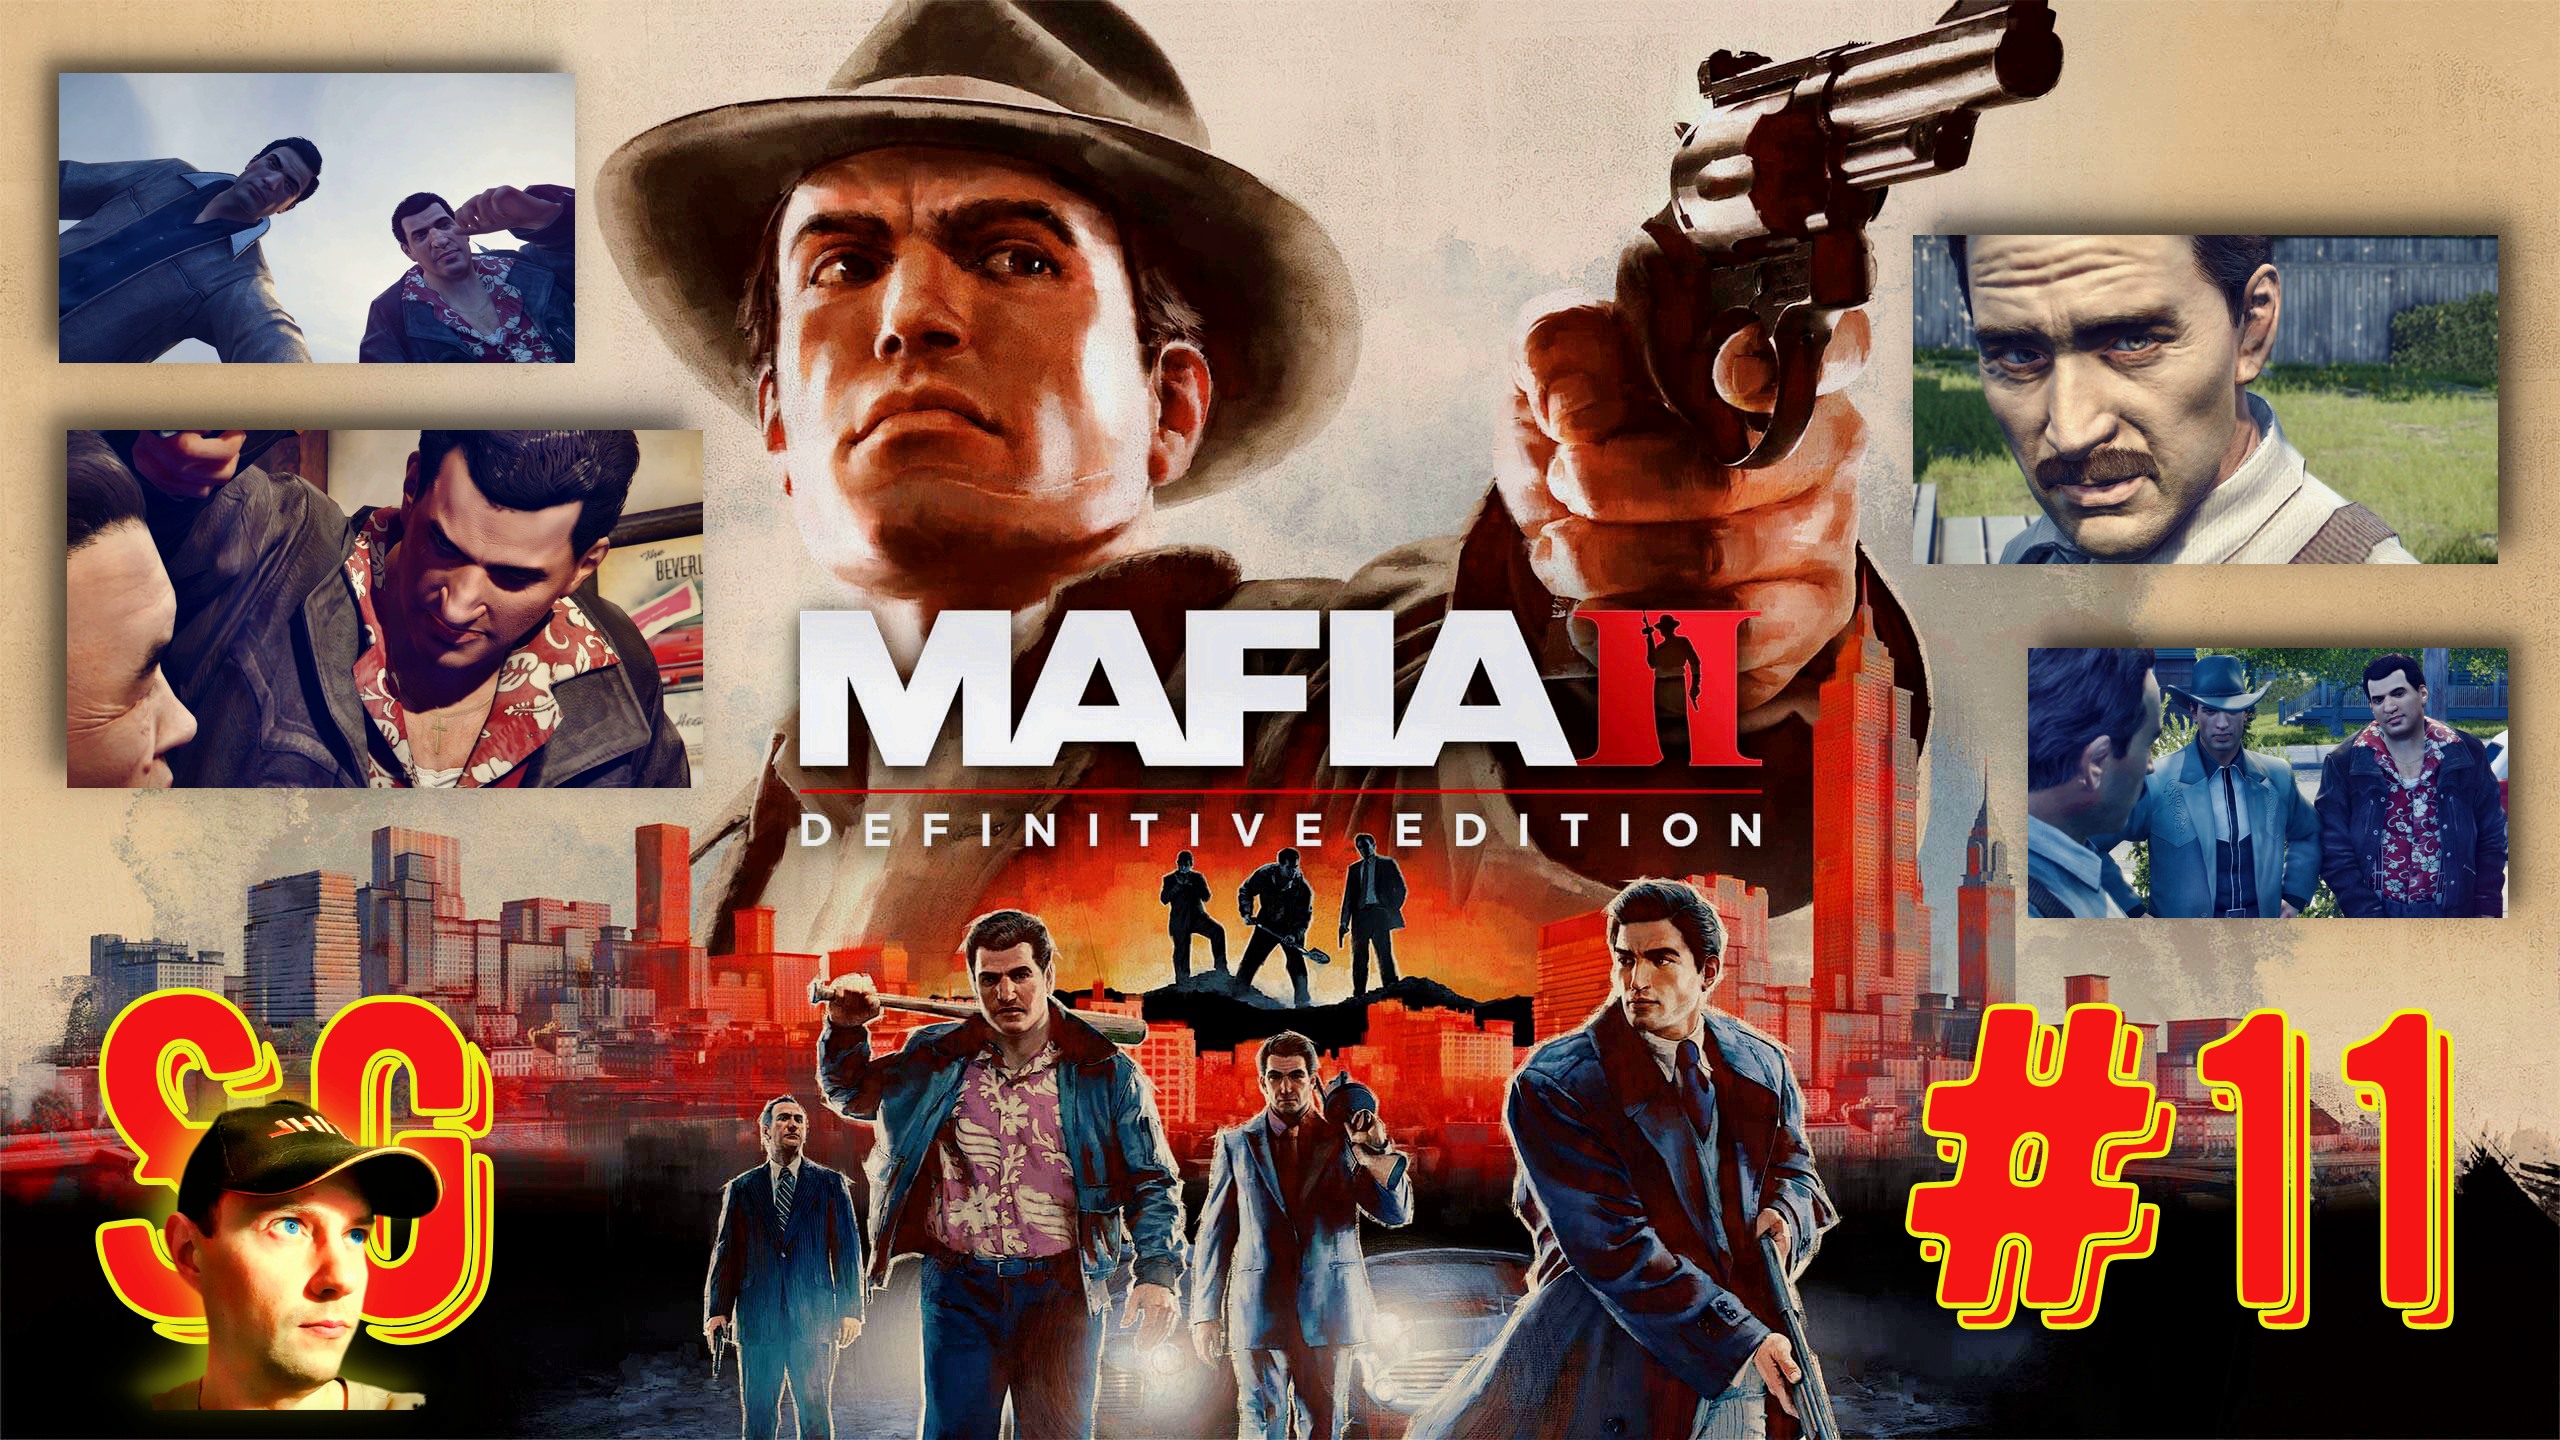 #11 МАФИЯ 2. Mafia II: Definitive Edition. Игрофильм. Все плохо с делом! Встреча с Томми Анджело.18+